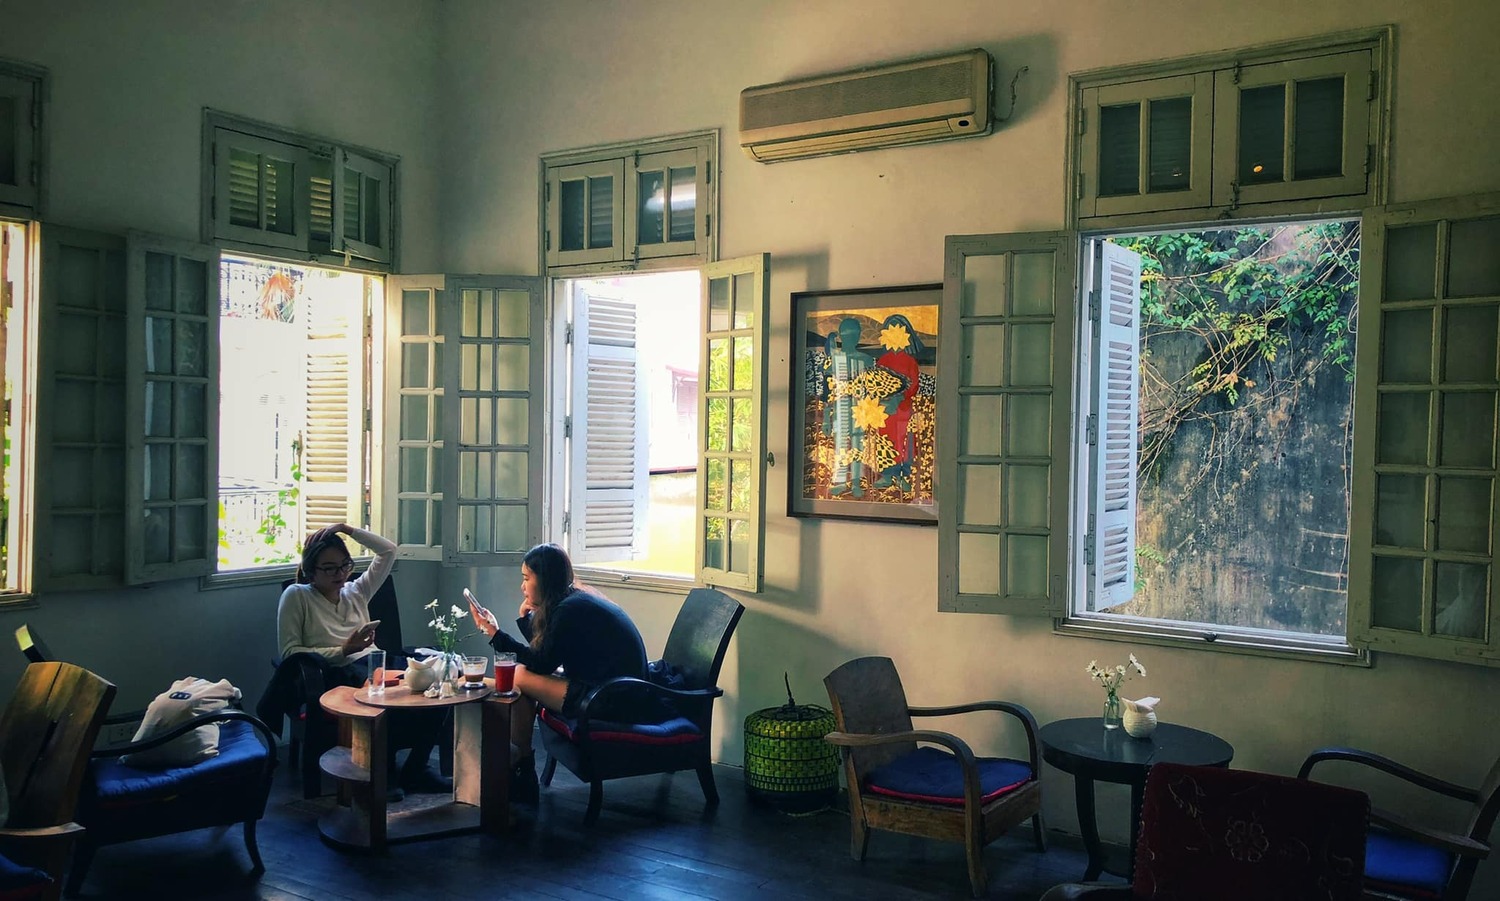 Săn lùng những không gian nghệ thuật ở Hà Nội đang hót hòn họt 10